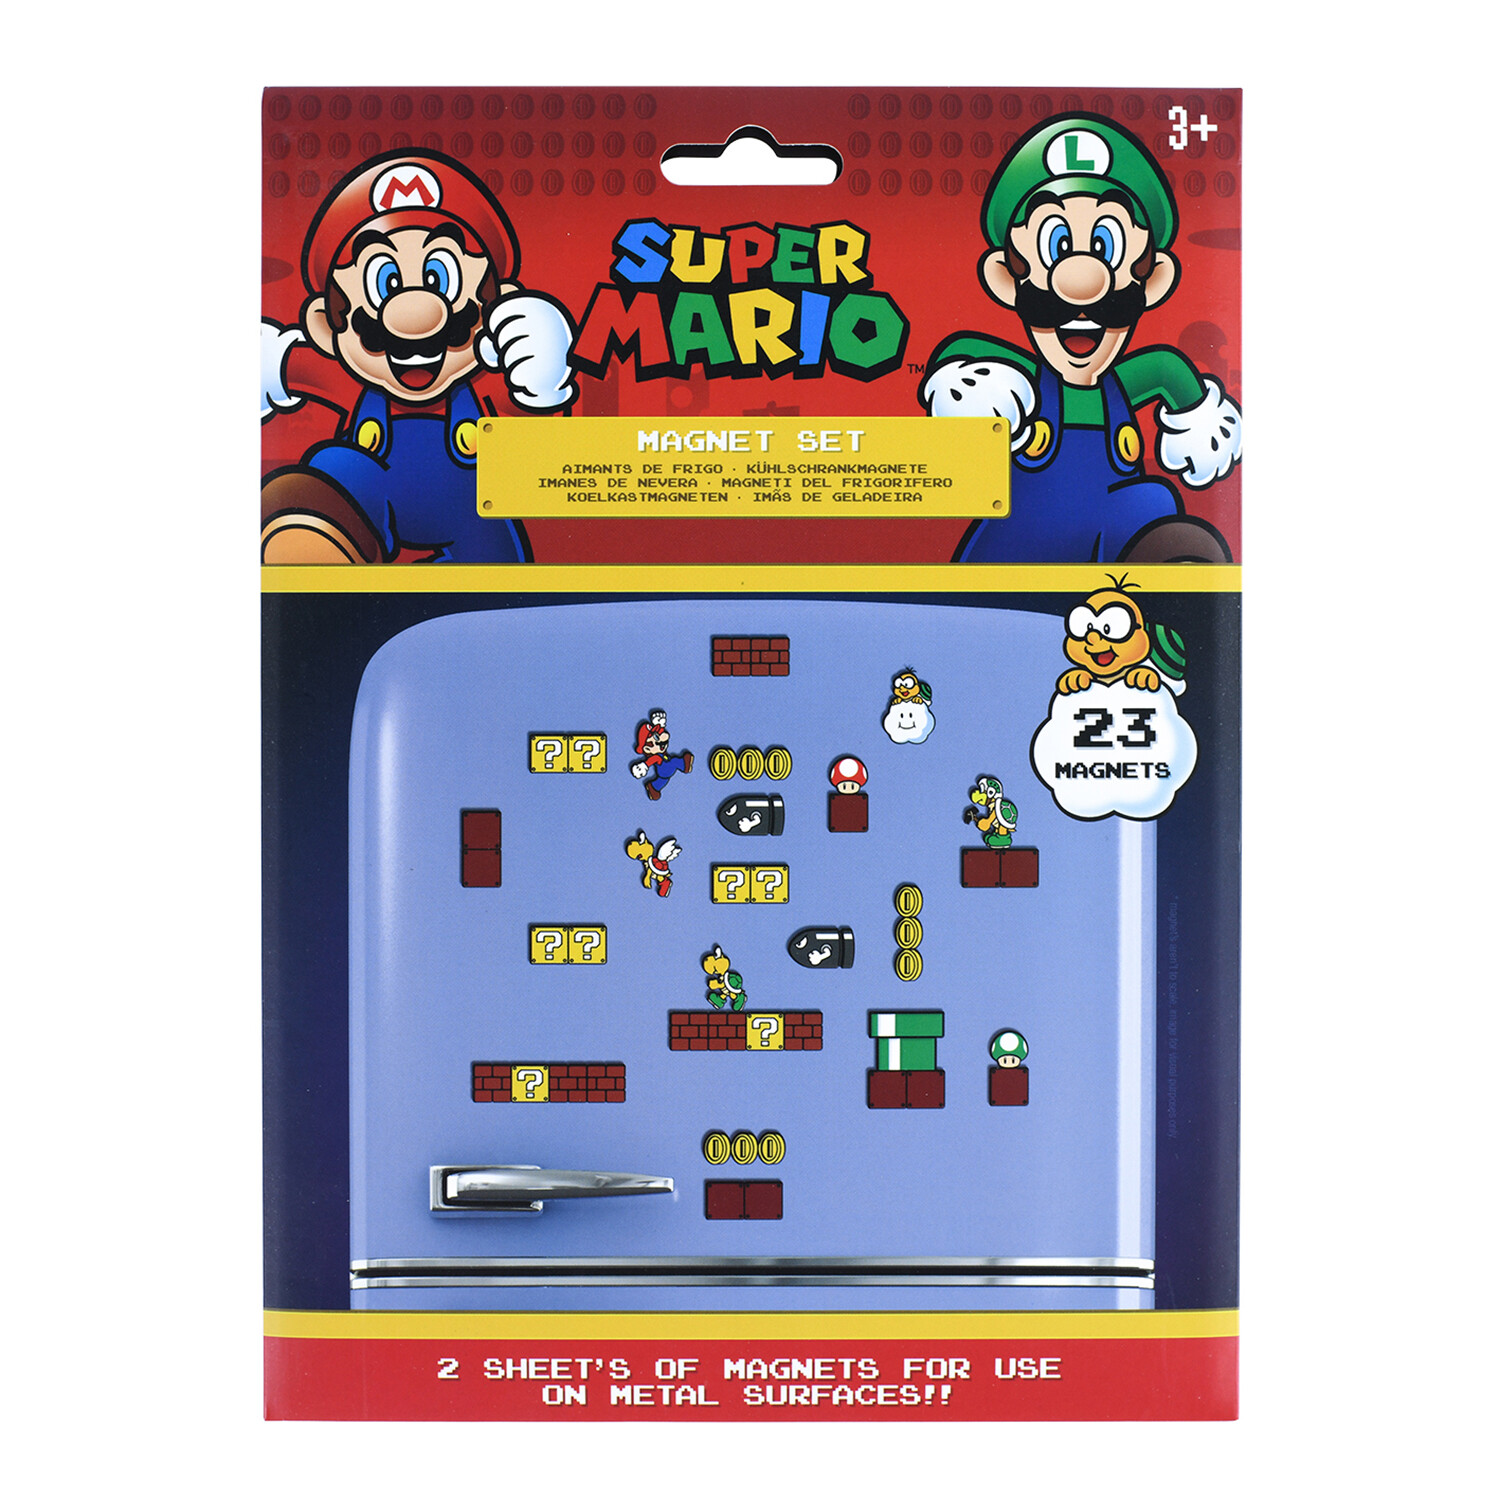 Super Mario Magnet Set Image